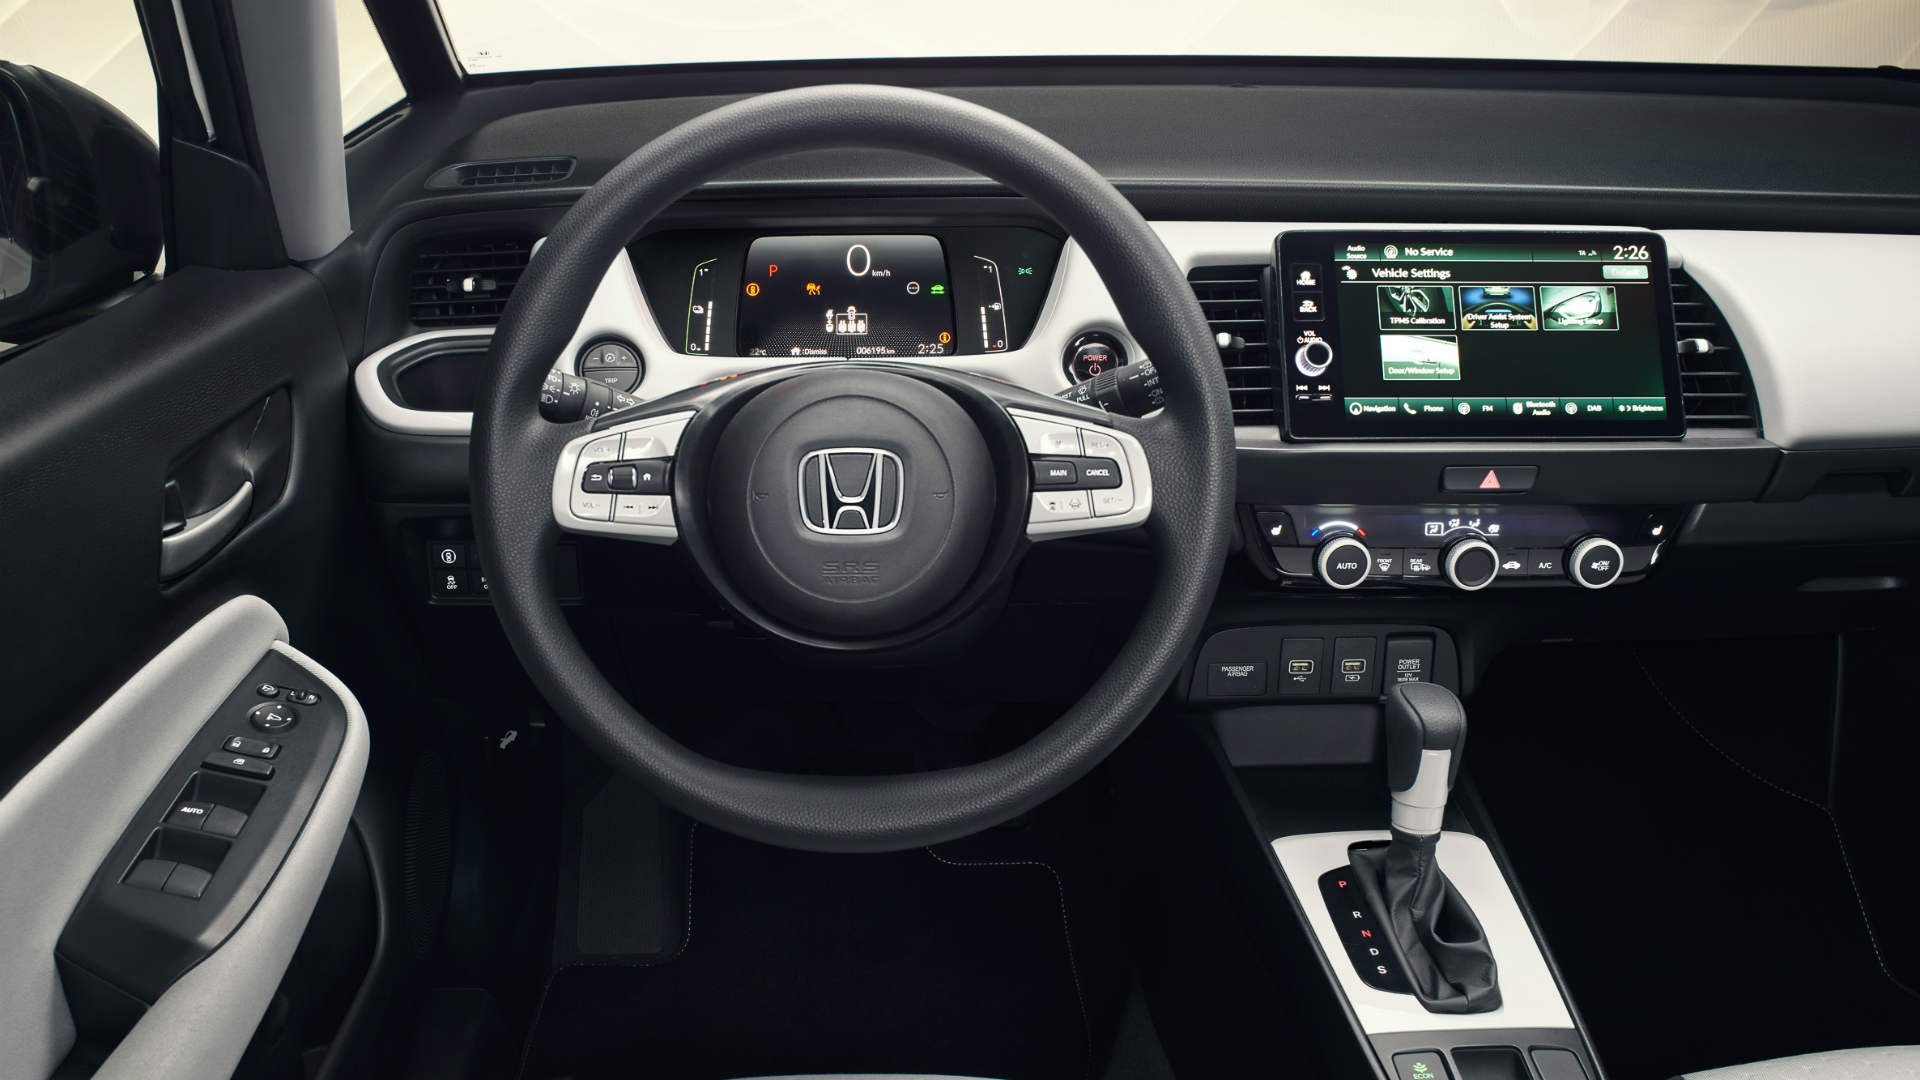 2020 Honda Jazz steering wheel